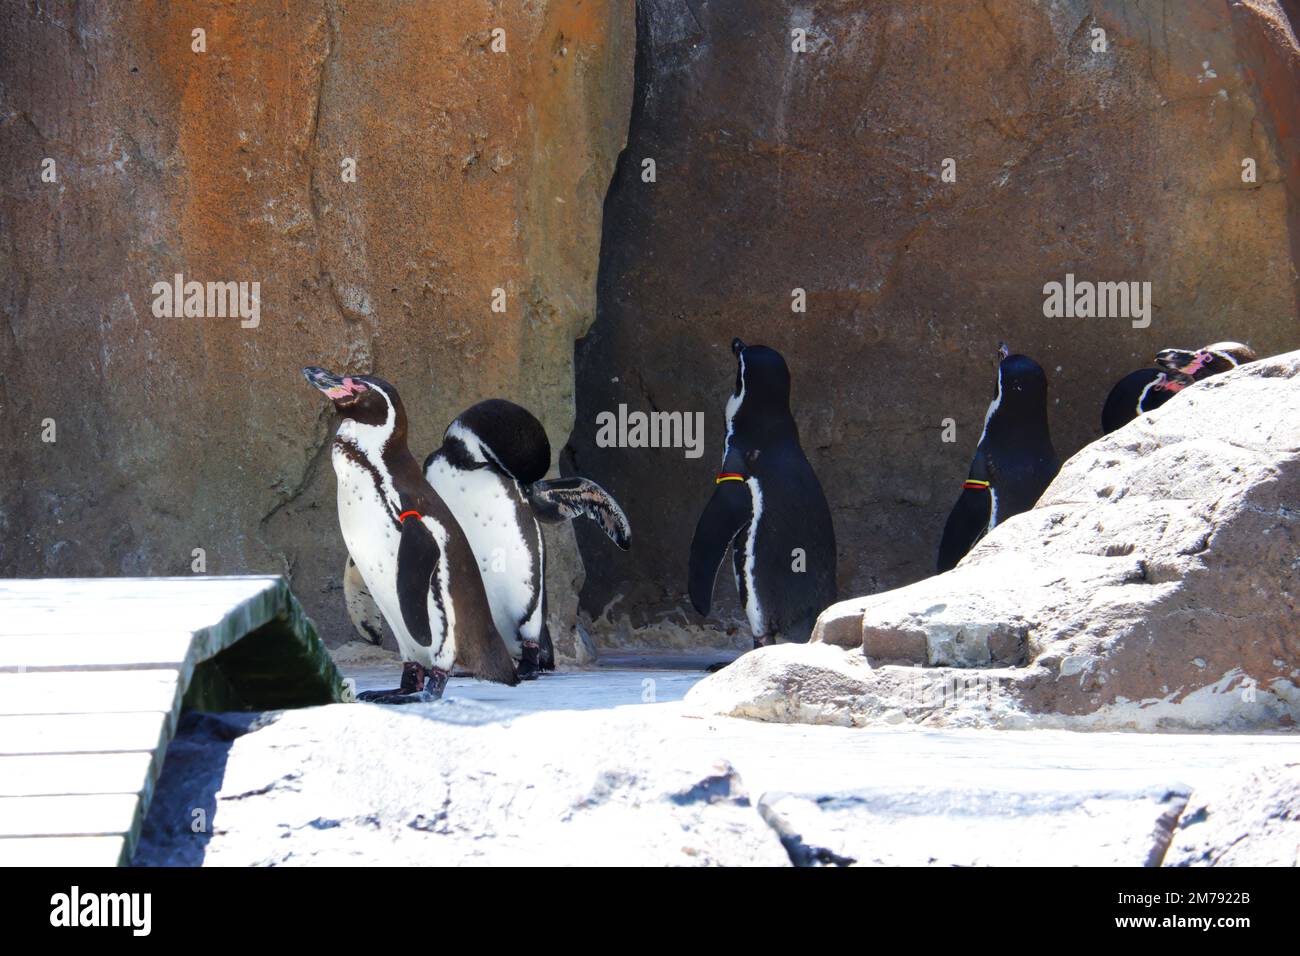 Pinguine, die auf leichtem Schnee in der Nähe von Felsen im Freien spazieren Stockfoto